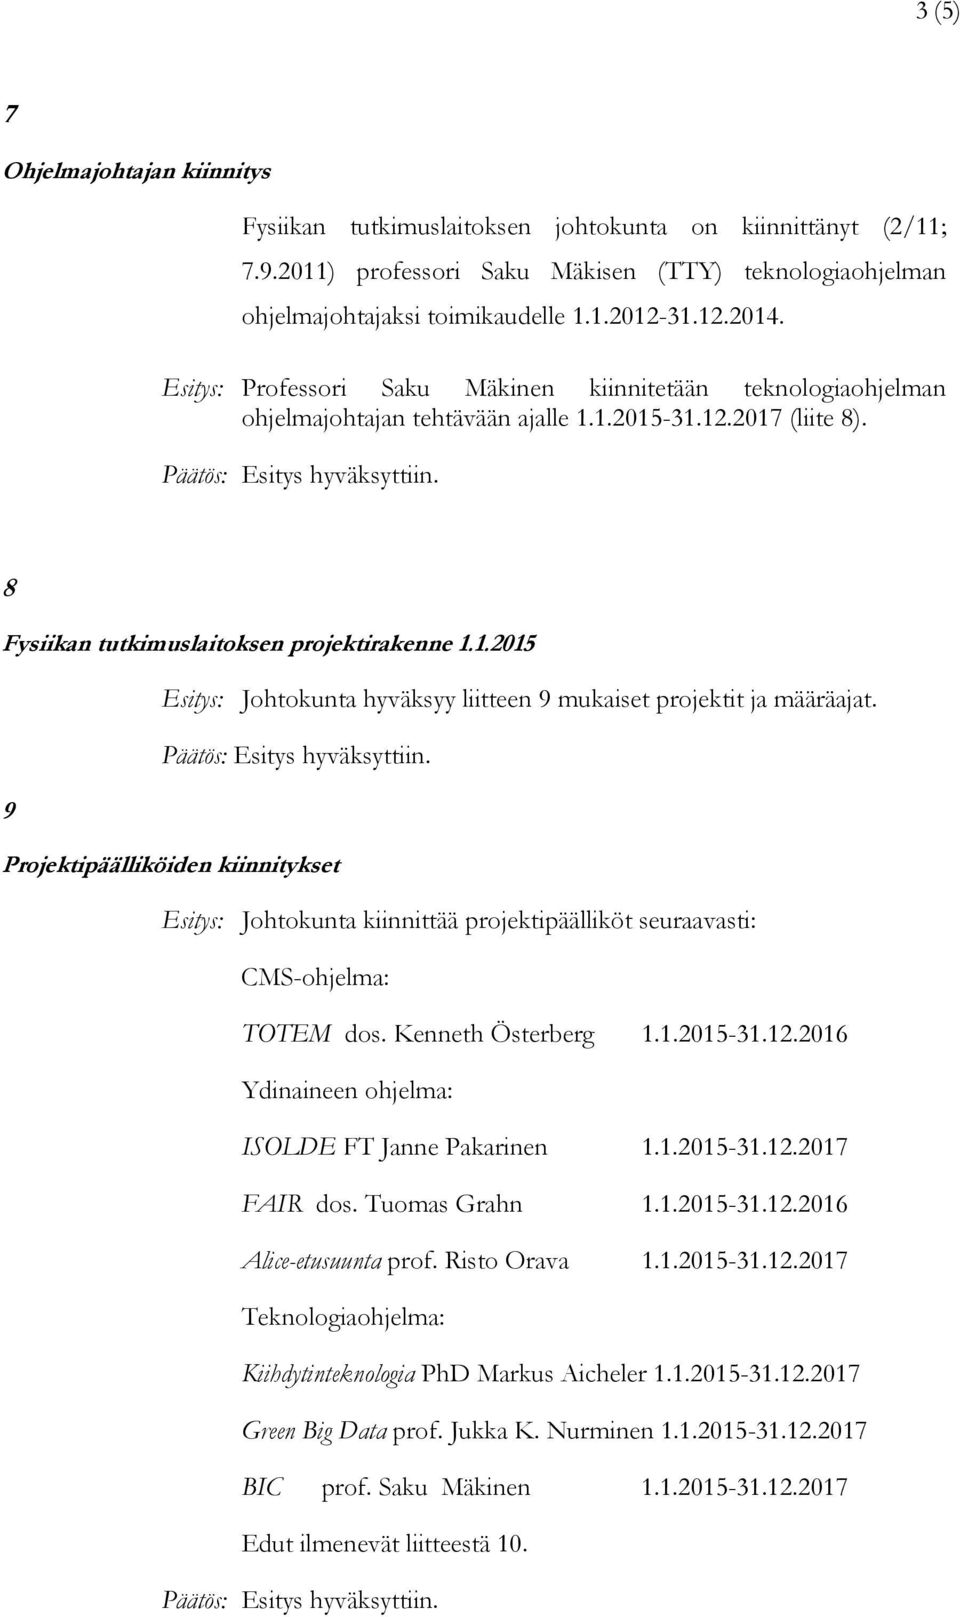 9 Projektipäälliköiden kiinnitykset Esitys: Johtokunta kiinnittää projektipäälliköt seuraavasti: CMS-ohjelma: TOTEM dos. Kenneth Österberg 1.1.2015-31.12.